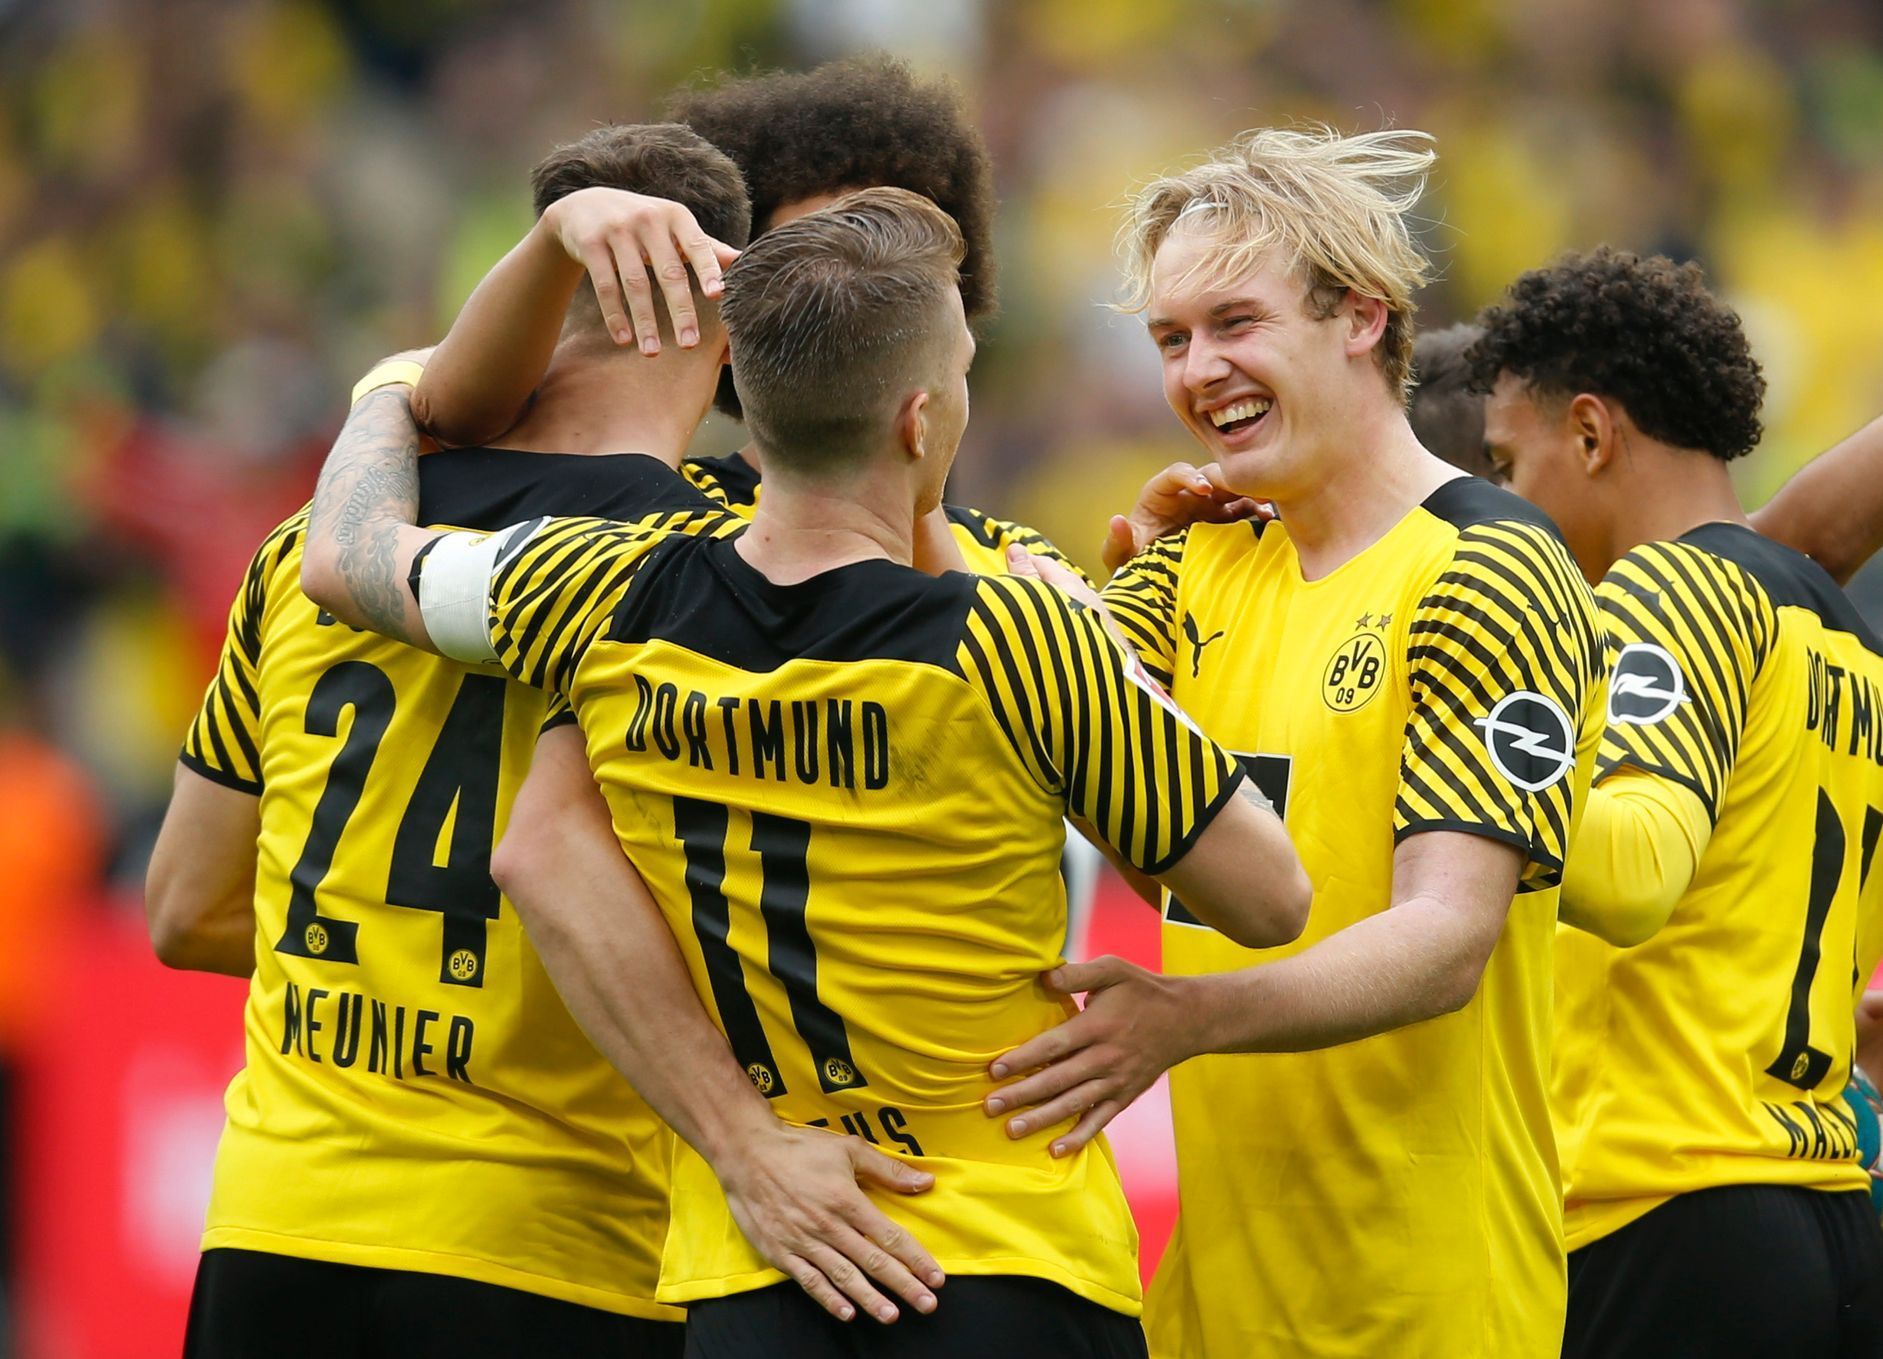 Borussia Dortmund slaví branku v bundeslize